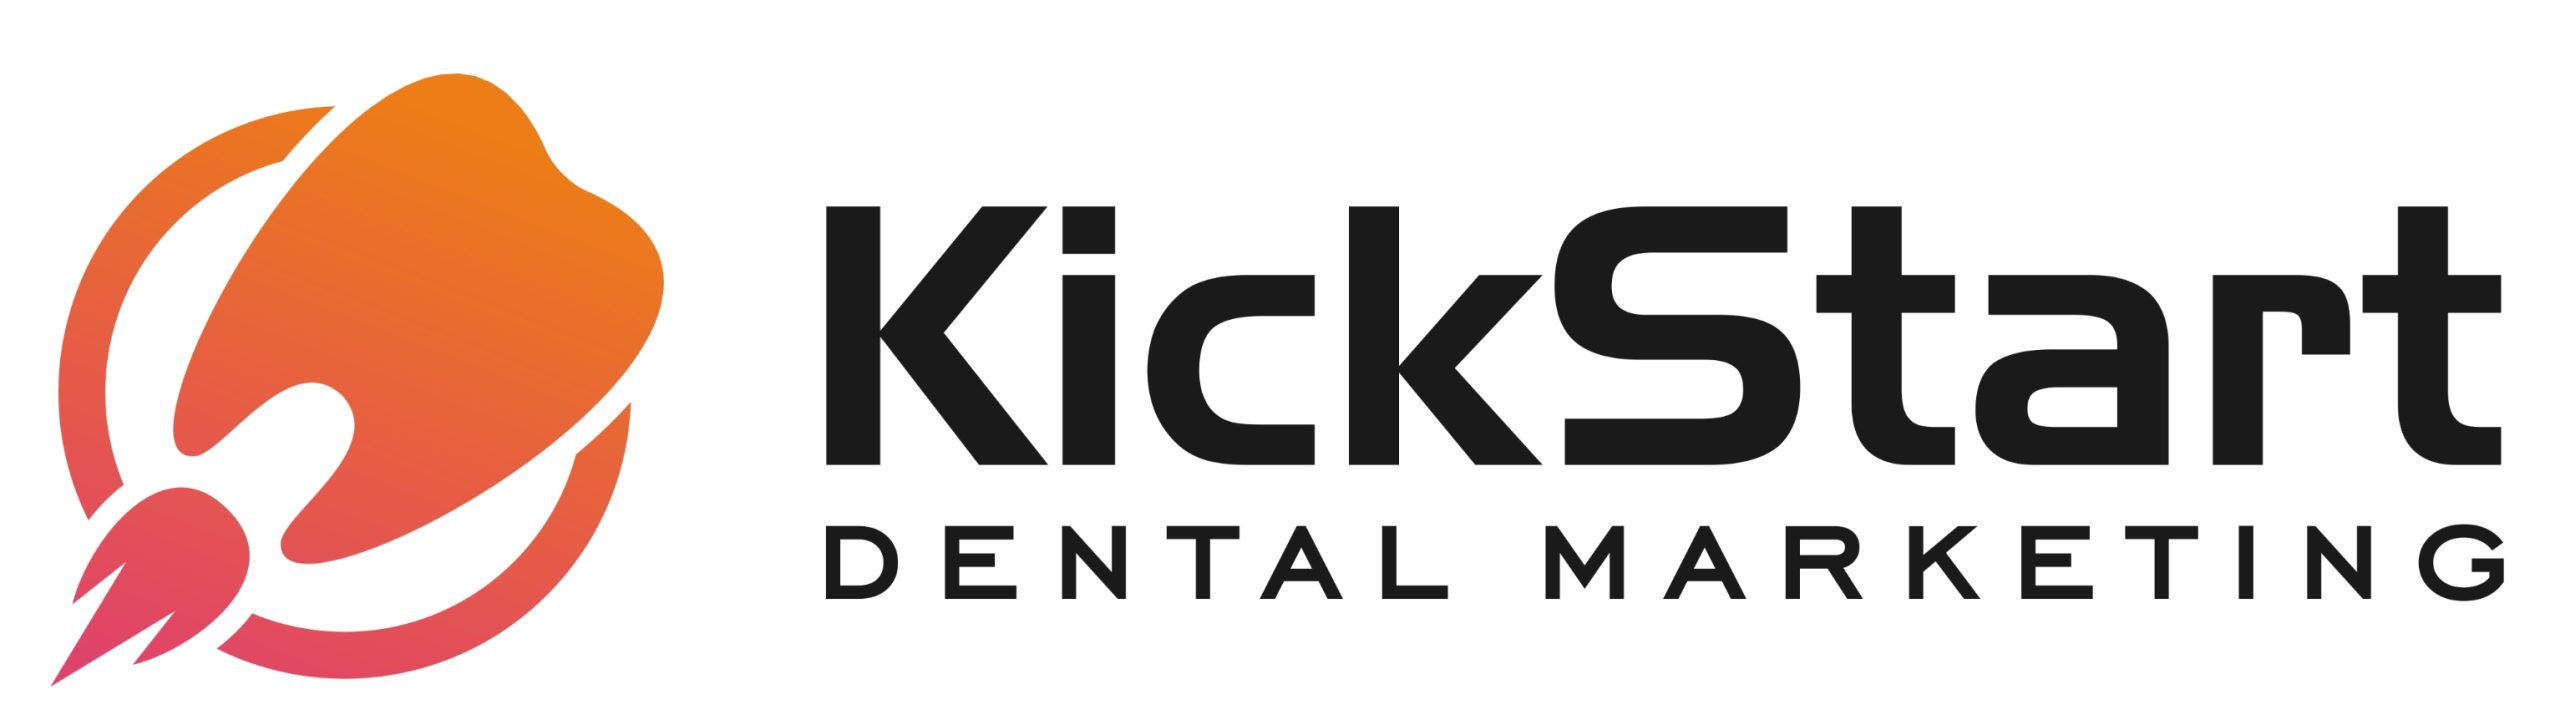 7. KickStart Dental Marketing